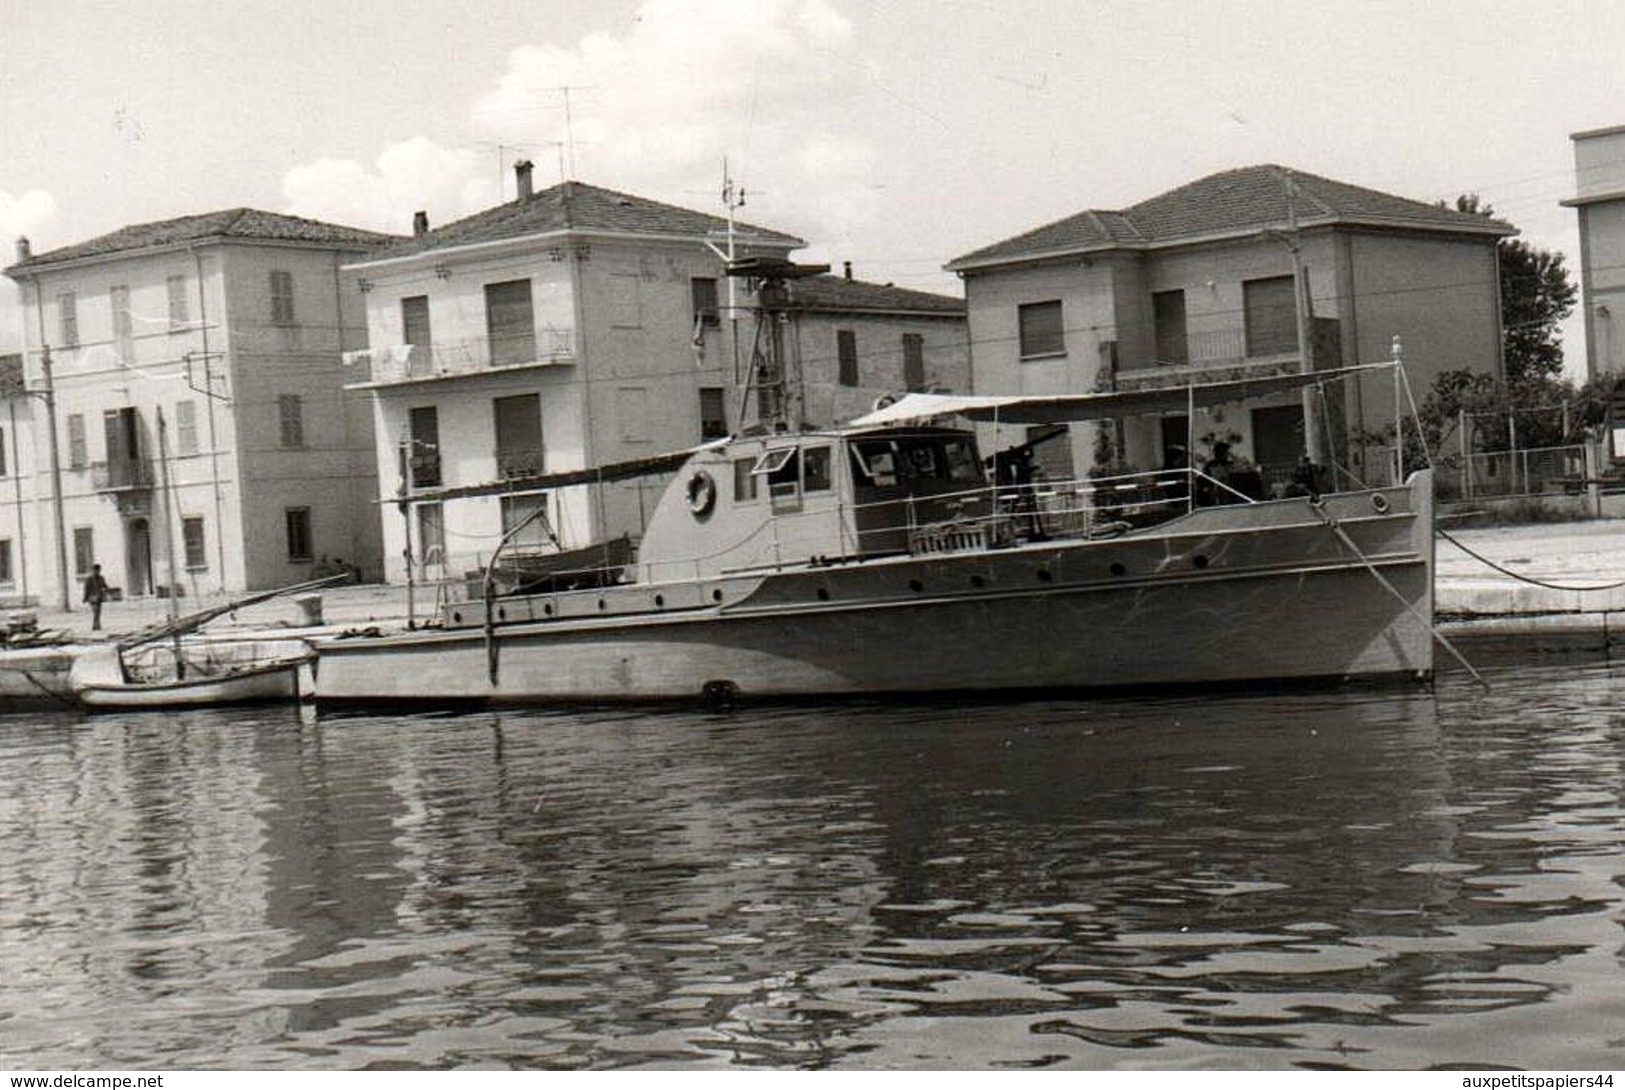 2 Photos Originales Petit Bâtiment Militaire Frégate à Identifier à Quai Vers 1960/70 - Bateau Fluvial - Boats